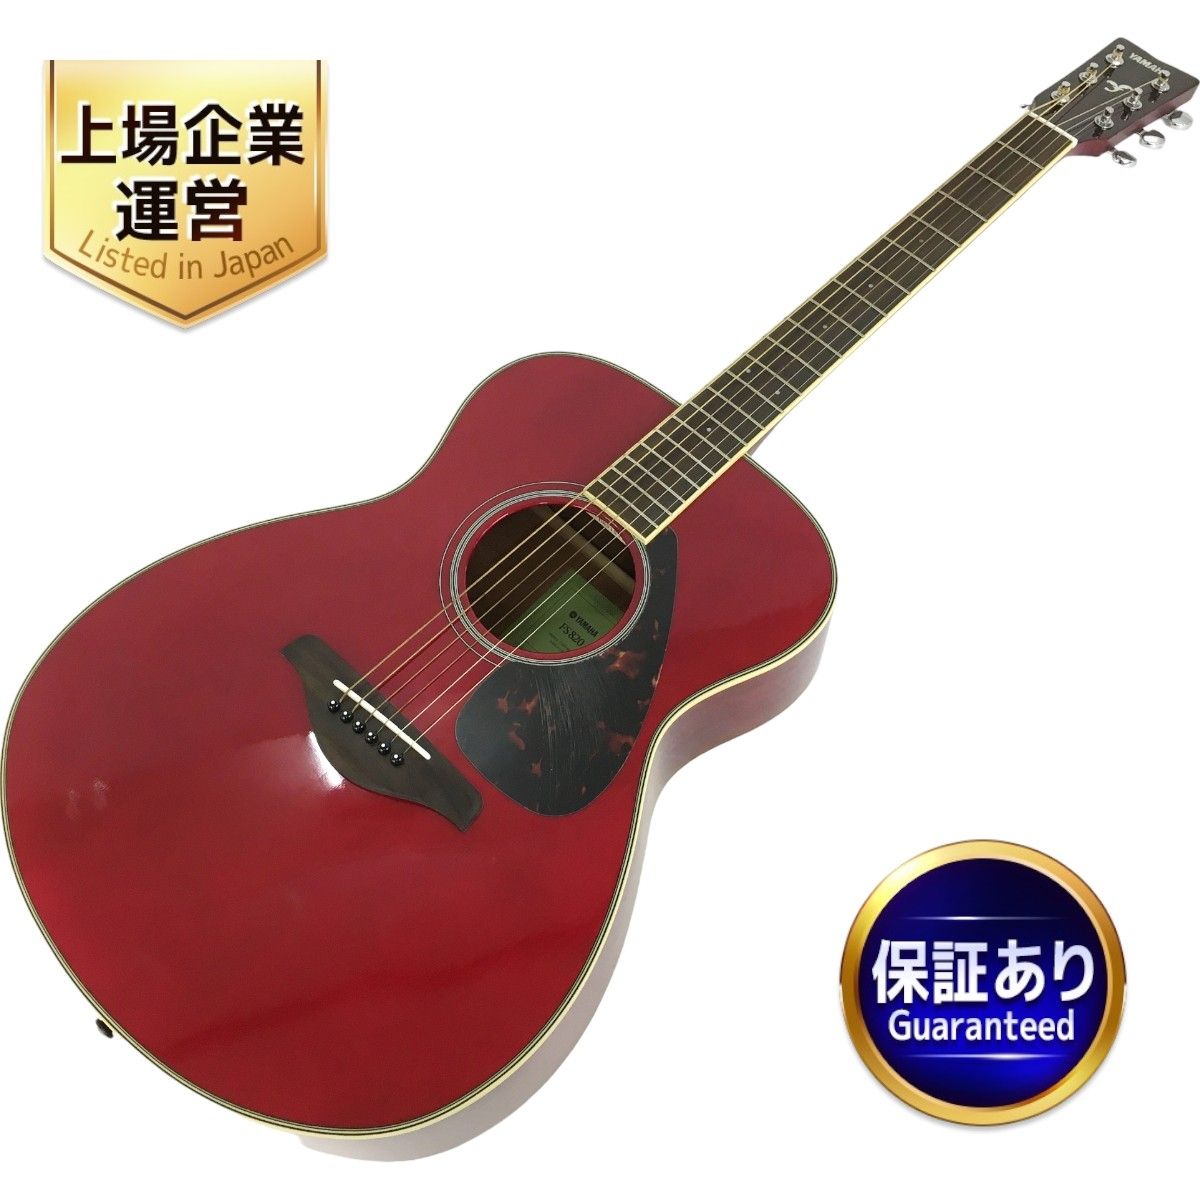 YAMAHA FS820 アコースティック ギター ソフトケース付き 楽器 アコギ ヤマハ 中古 良好 Y8965124